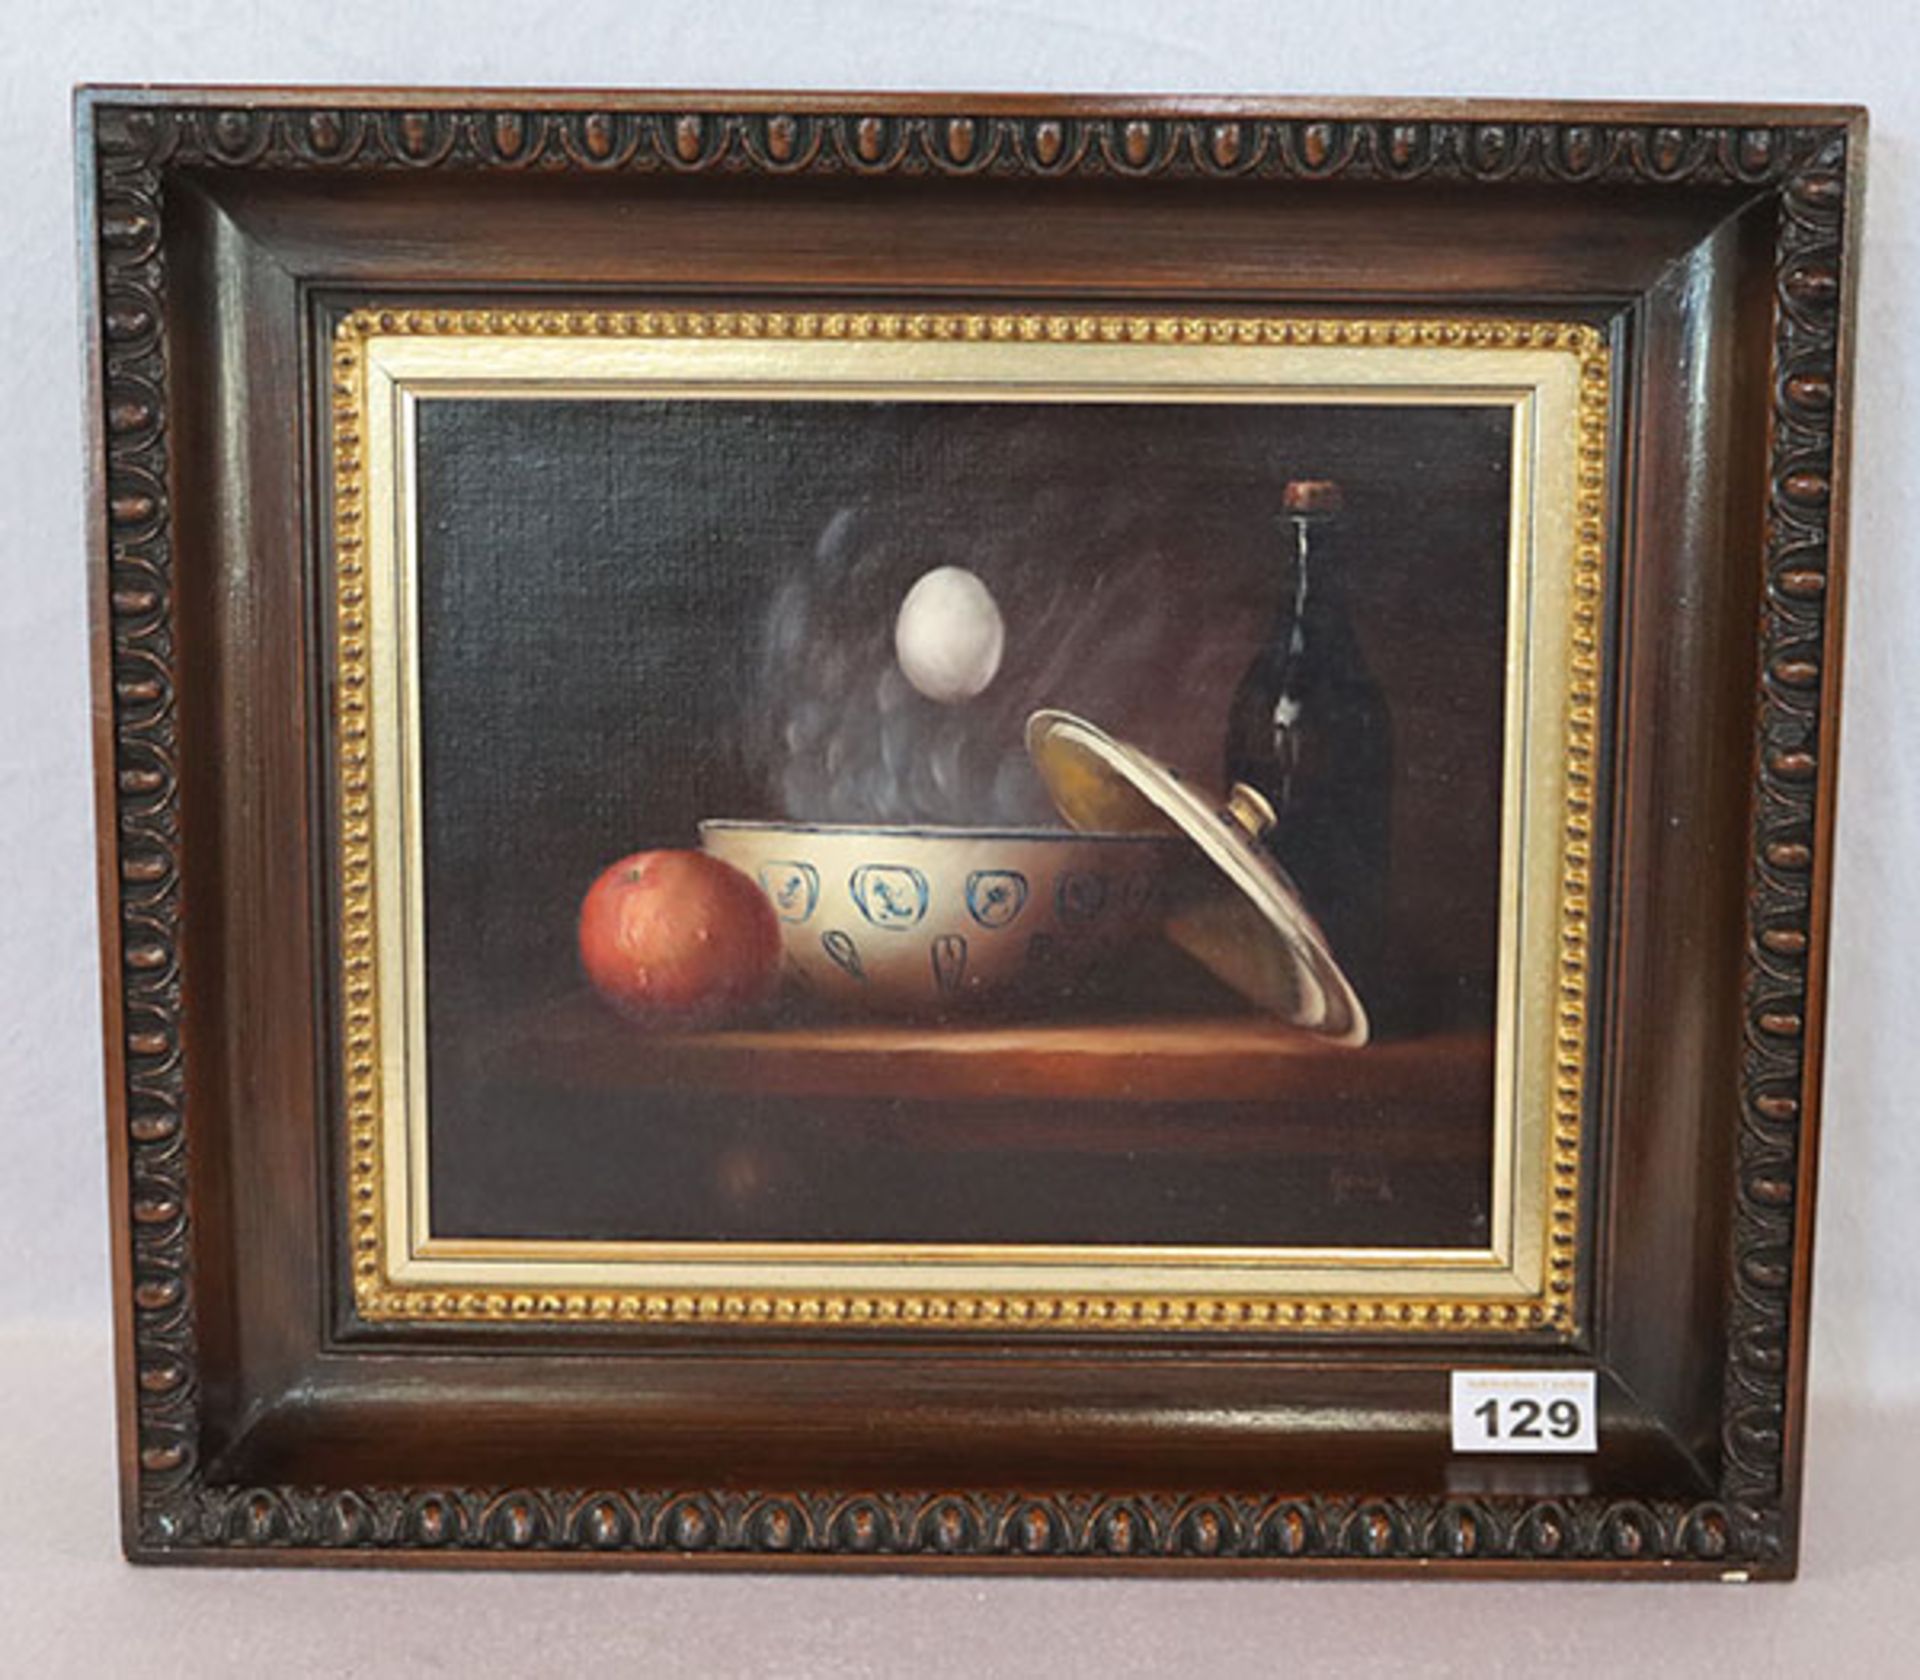 Gemälde ÖL/LW 'Stillleben mit Apfel und Ei', signiert Herdin, Radtke, * 1943 Korsze/Polen, tätig